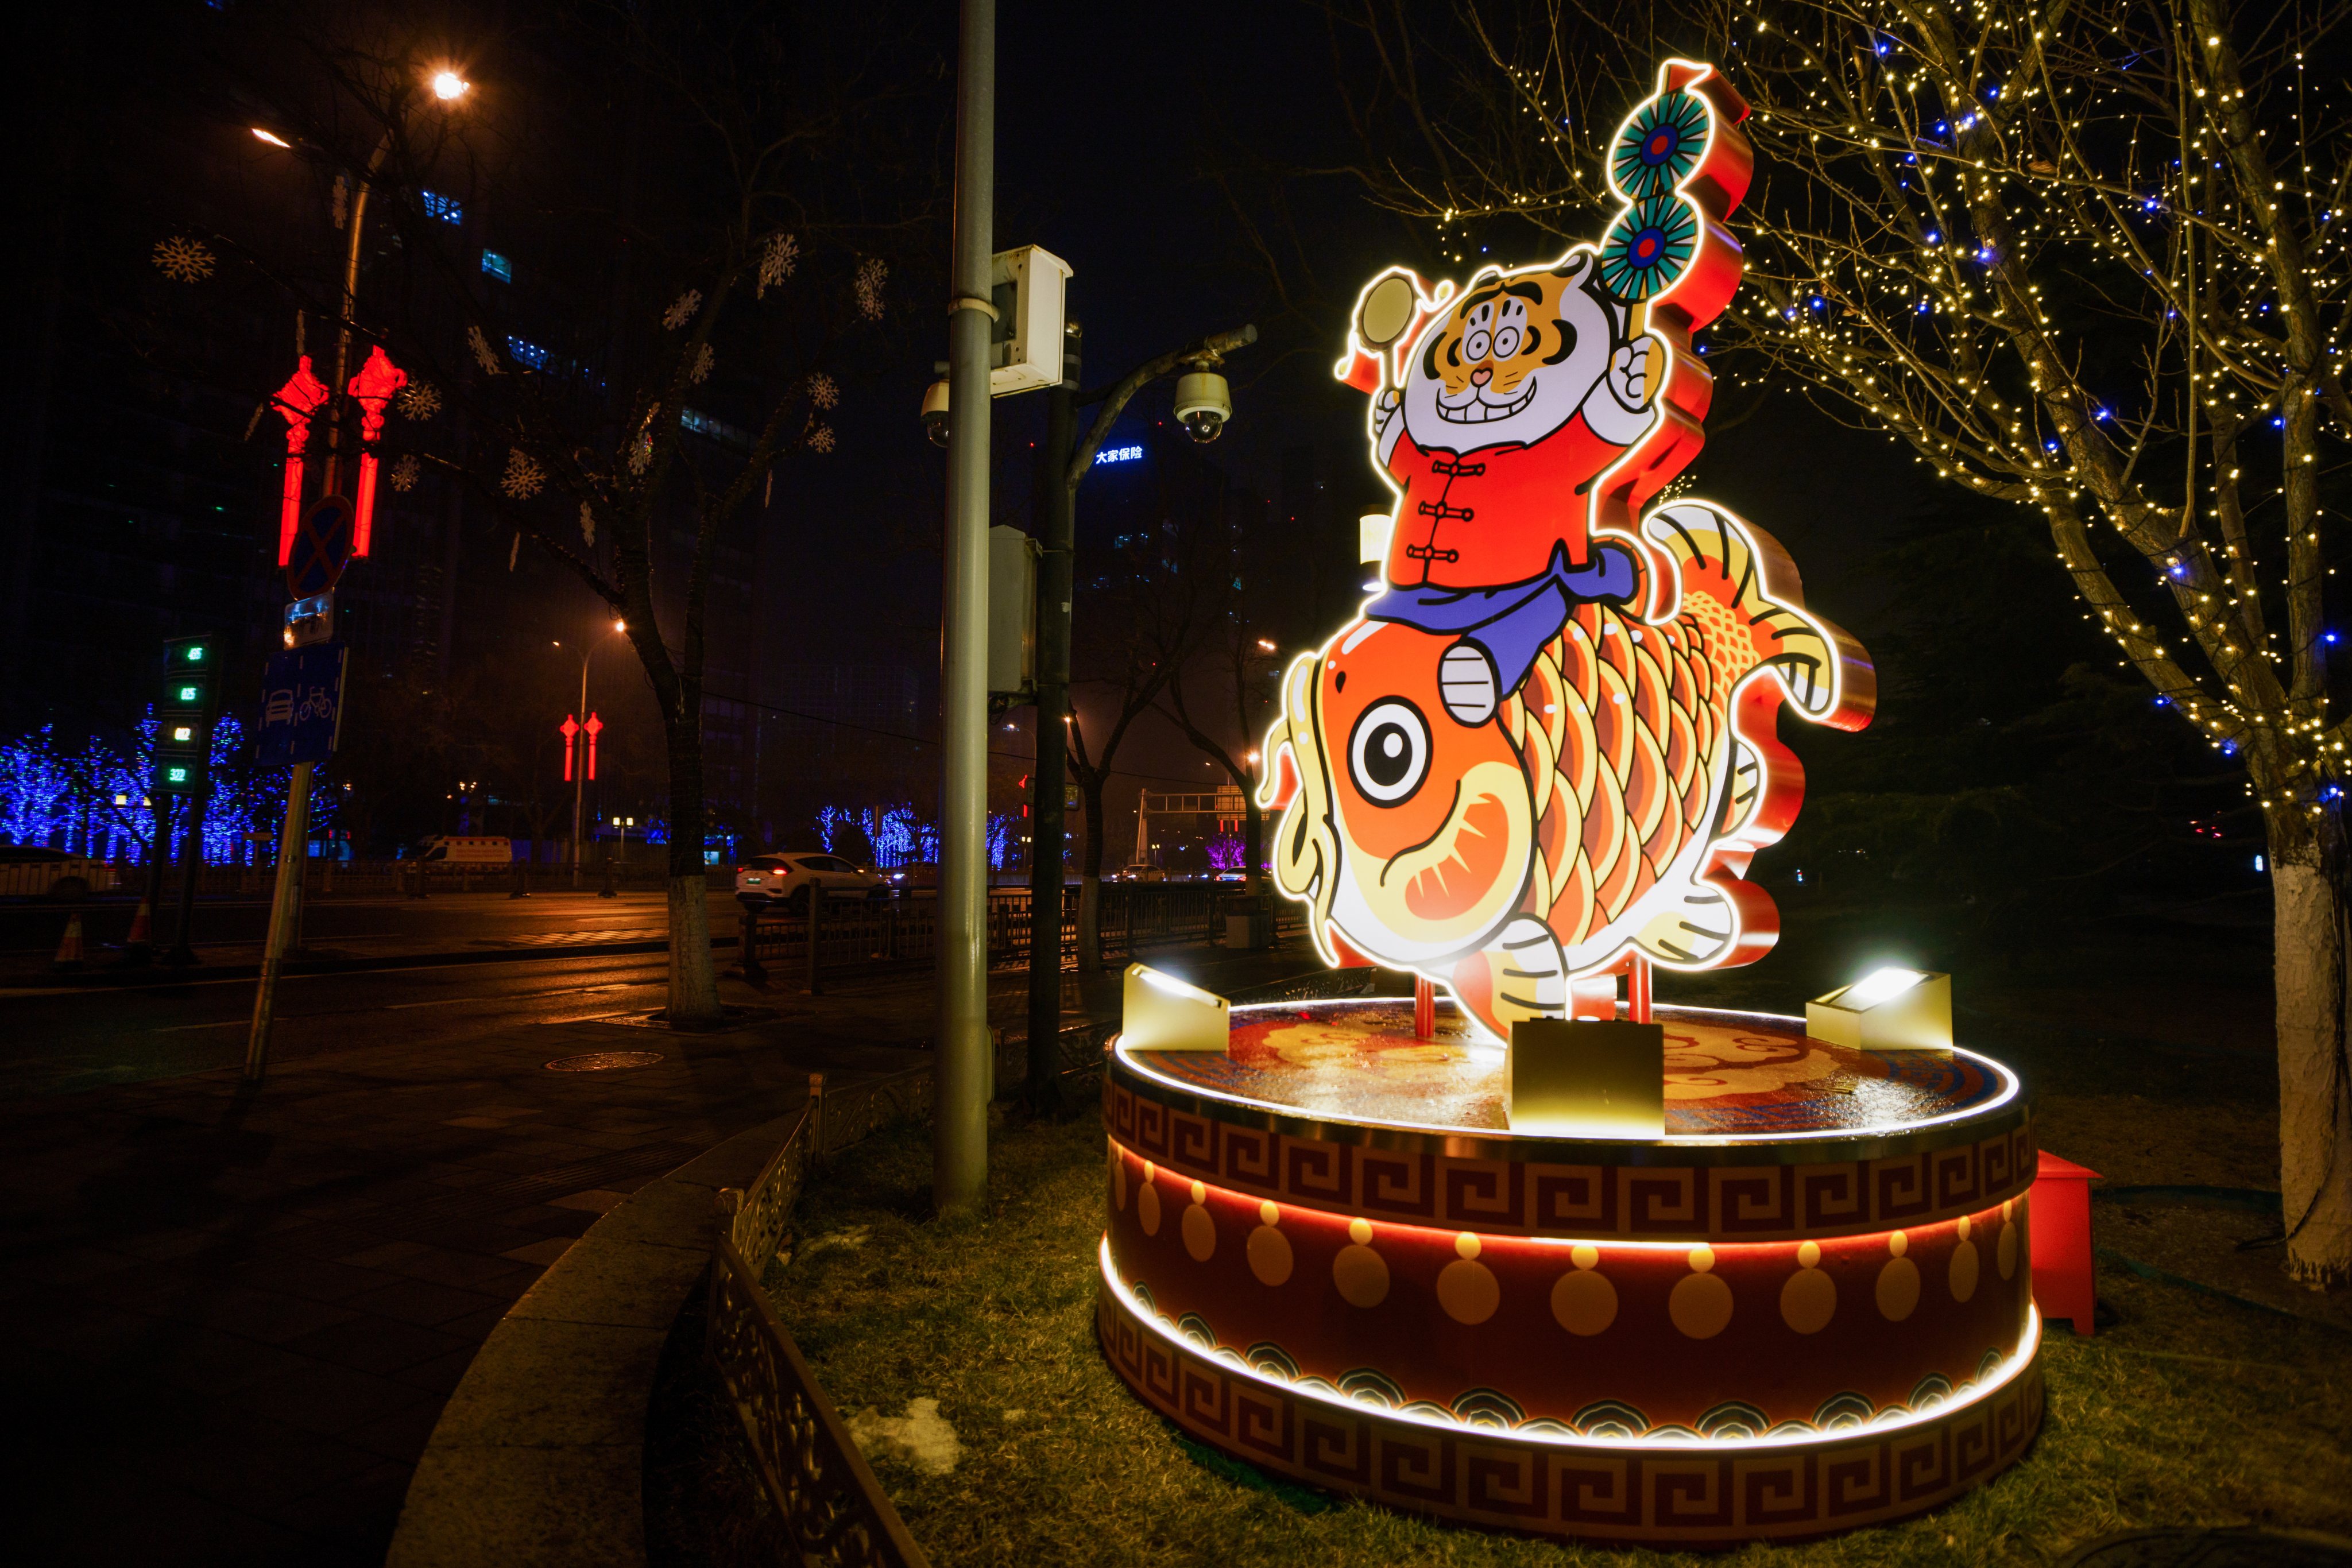 Preparativos para a celebração do Ano Novo Chinês na China